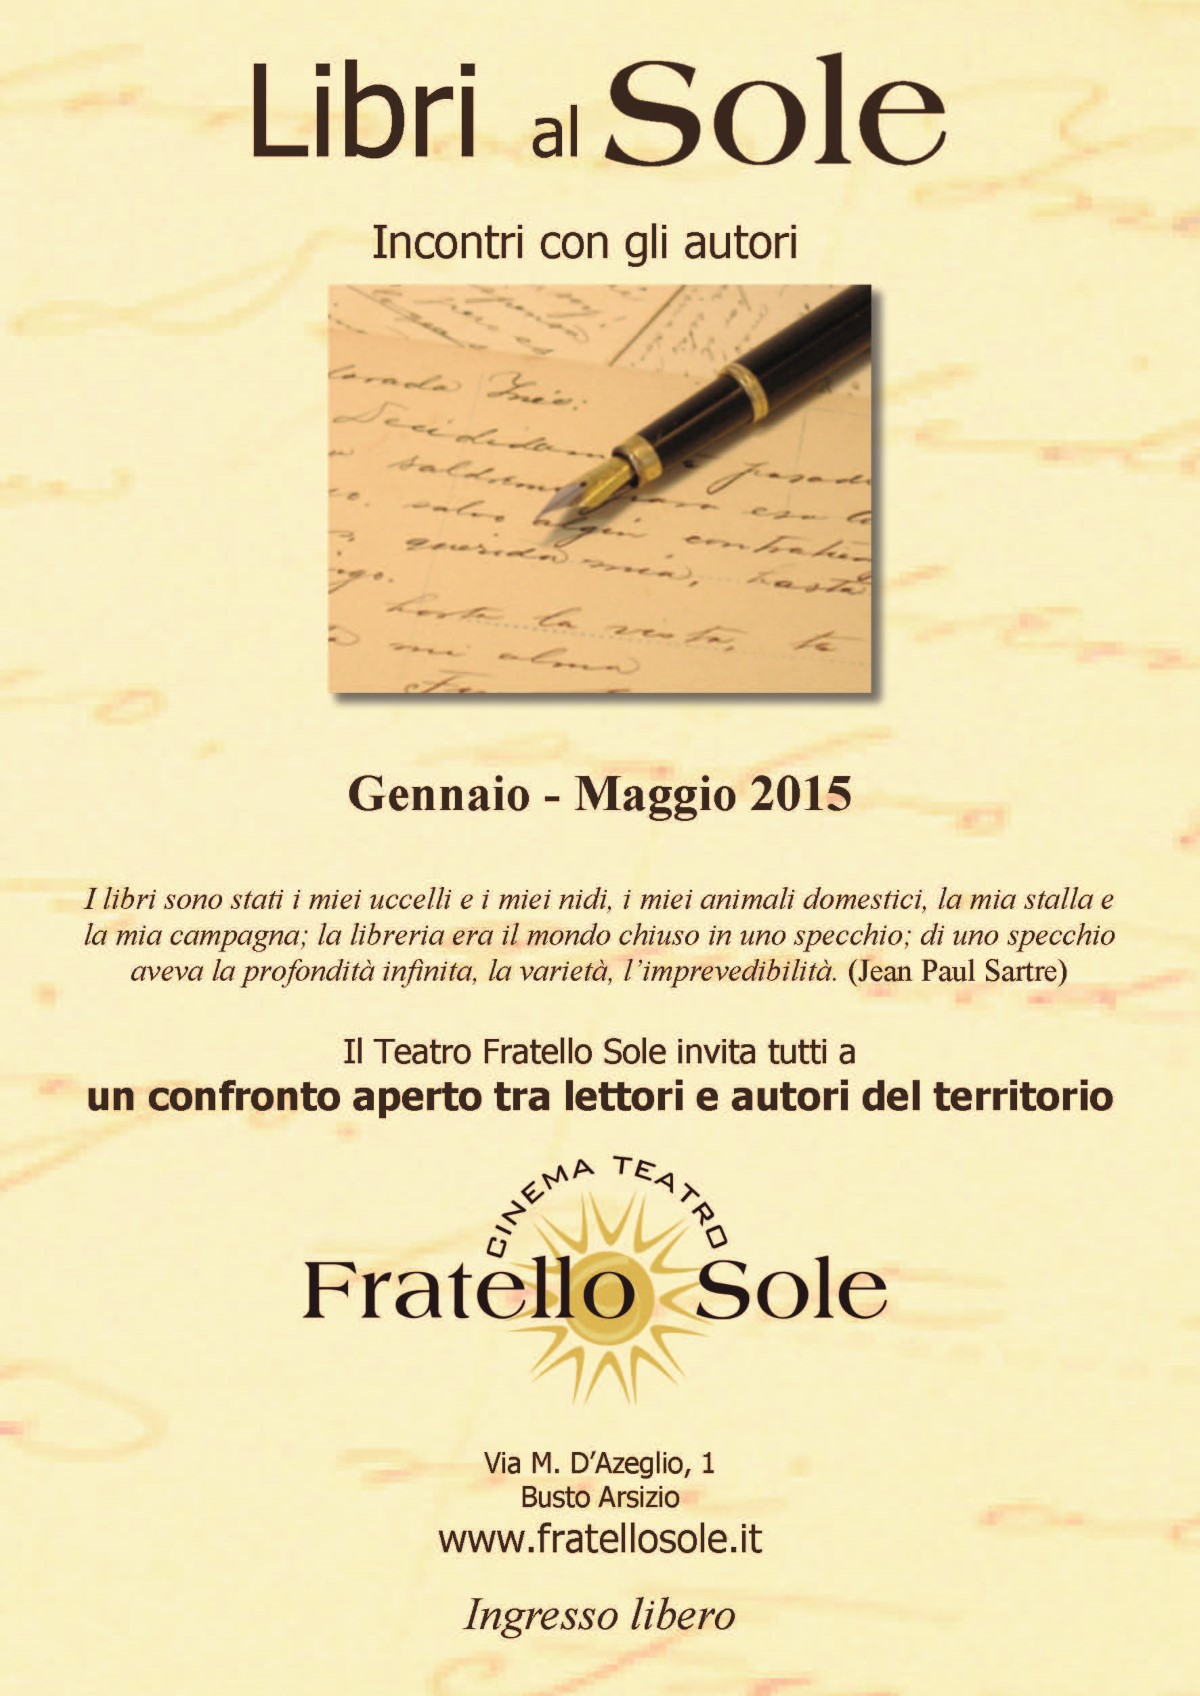 Gennaio-Maggio 2015 – Libri al Sole – Incontri con gli autori